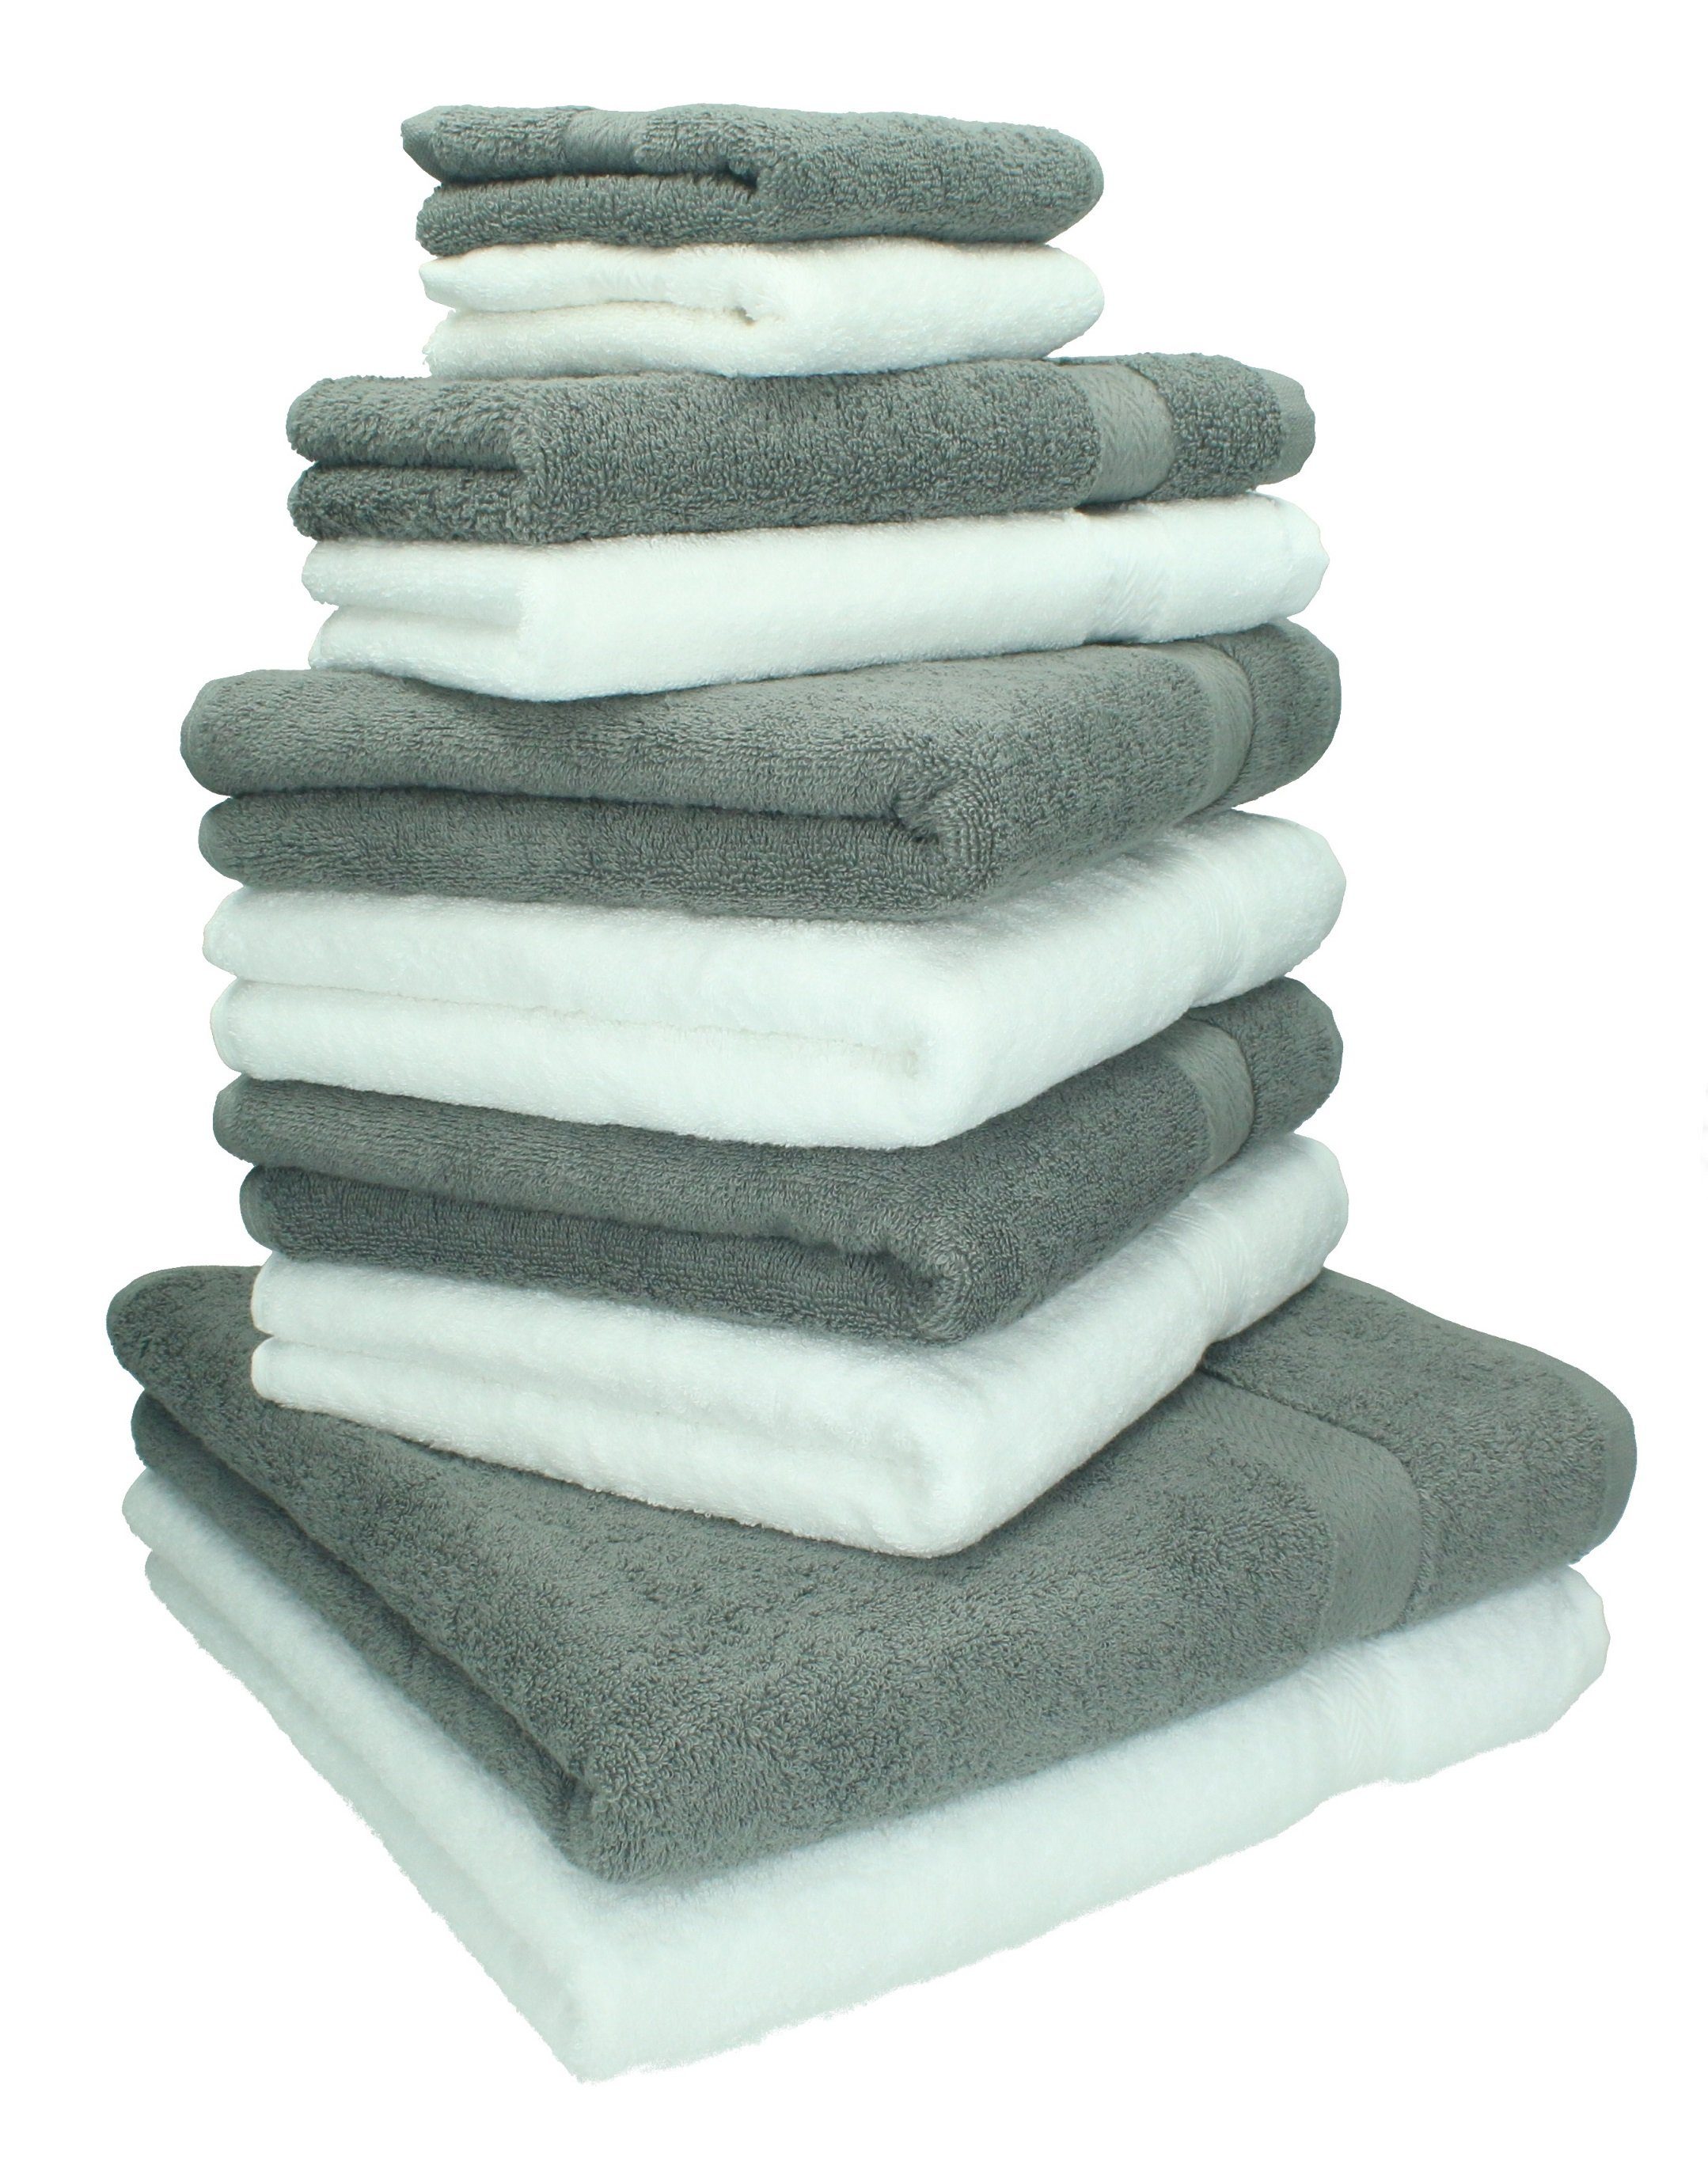 Betz Handtuch Set 10-TLG. Handtuch-Set Classic Farbe weiß und anthrazitgrau, 100% Baumwolle